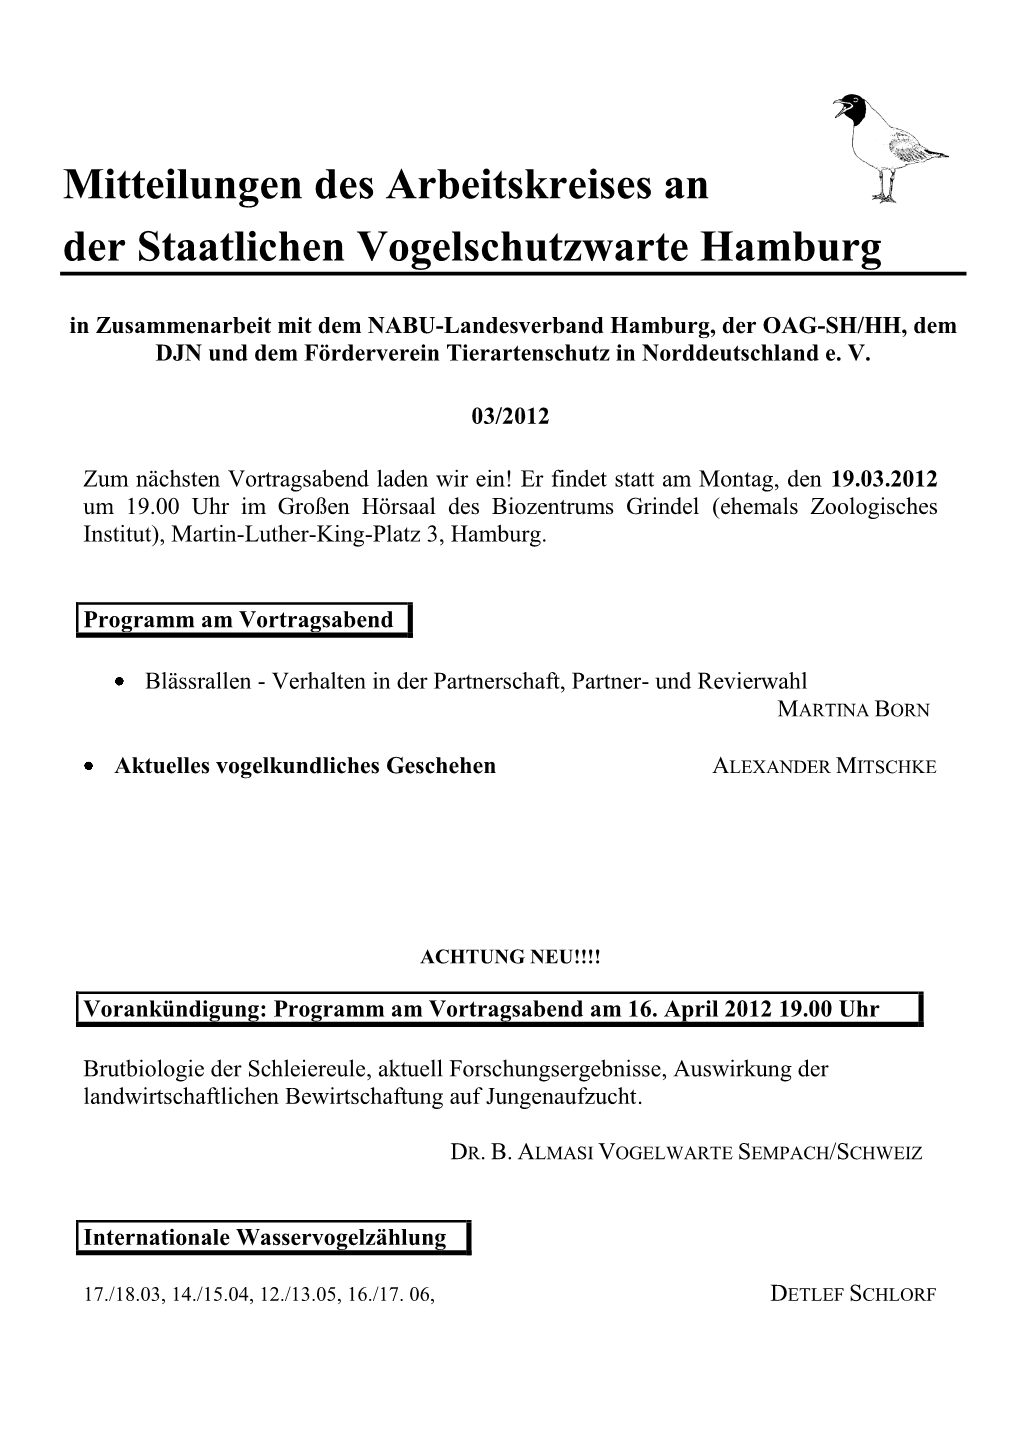 Mitteilungen Des Arbeitskreises an Der Staatlichen Vogelschutzwarte Hamburg 03/2012